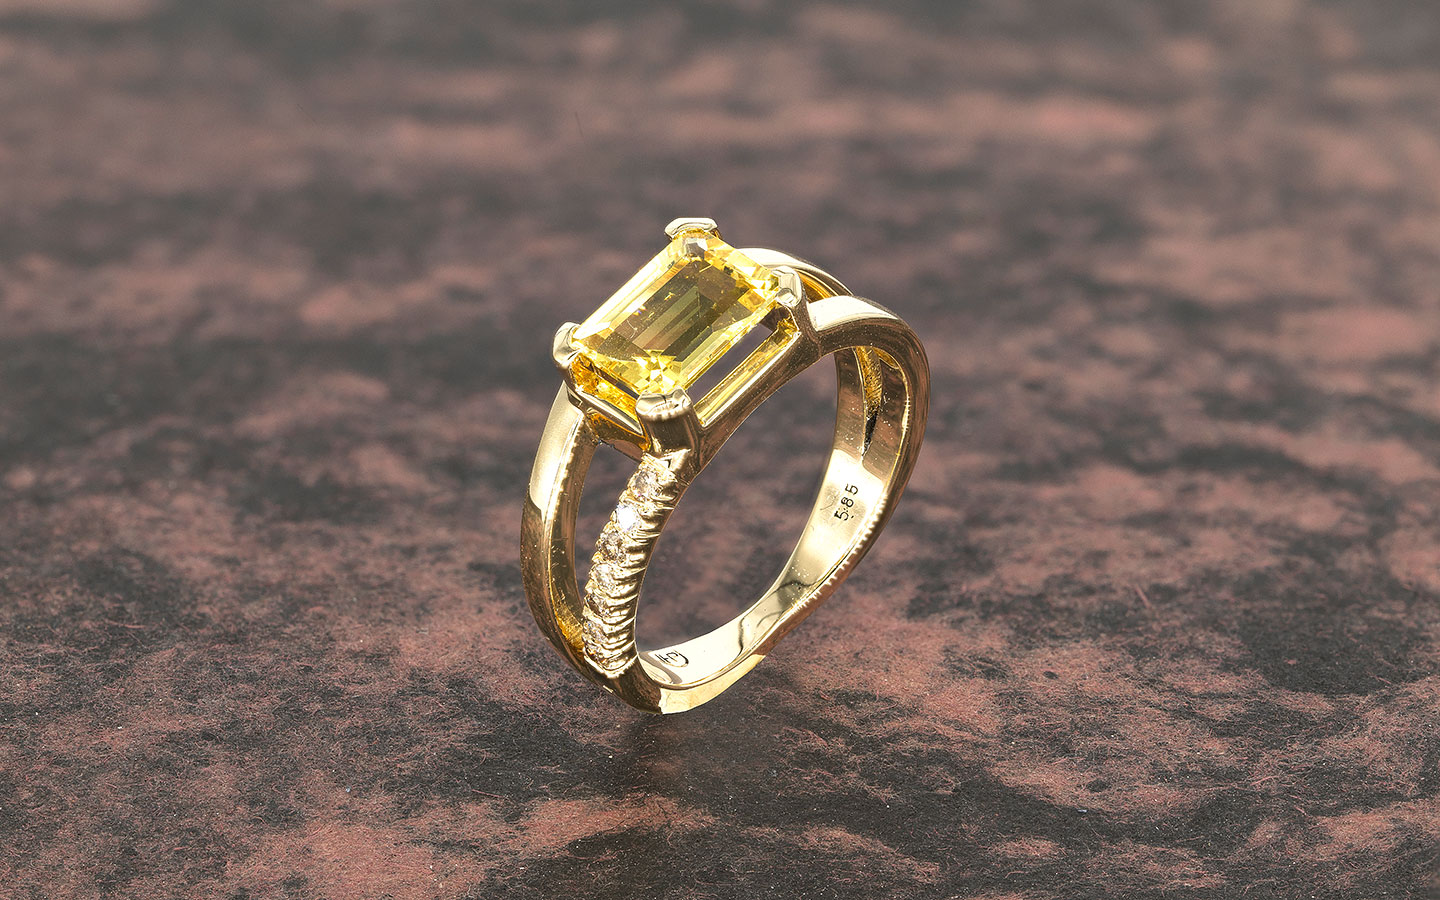 Ungleichförmig - Ring in 585/000 Gelbgold mit Beryll und weißen und braunen Brillanten